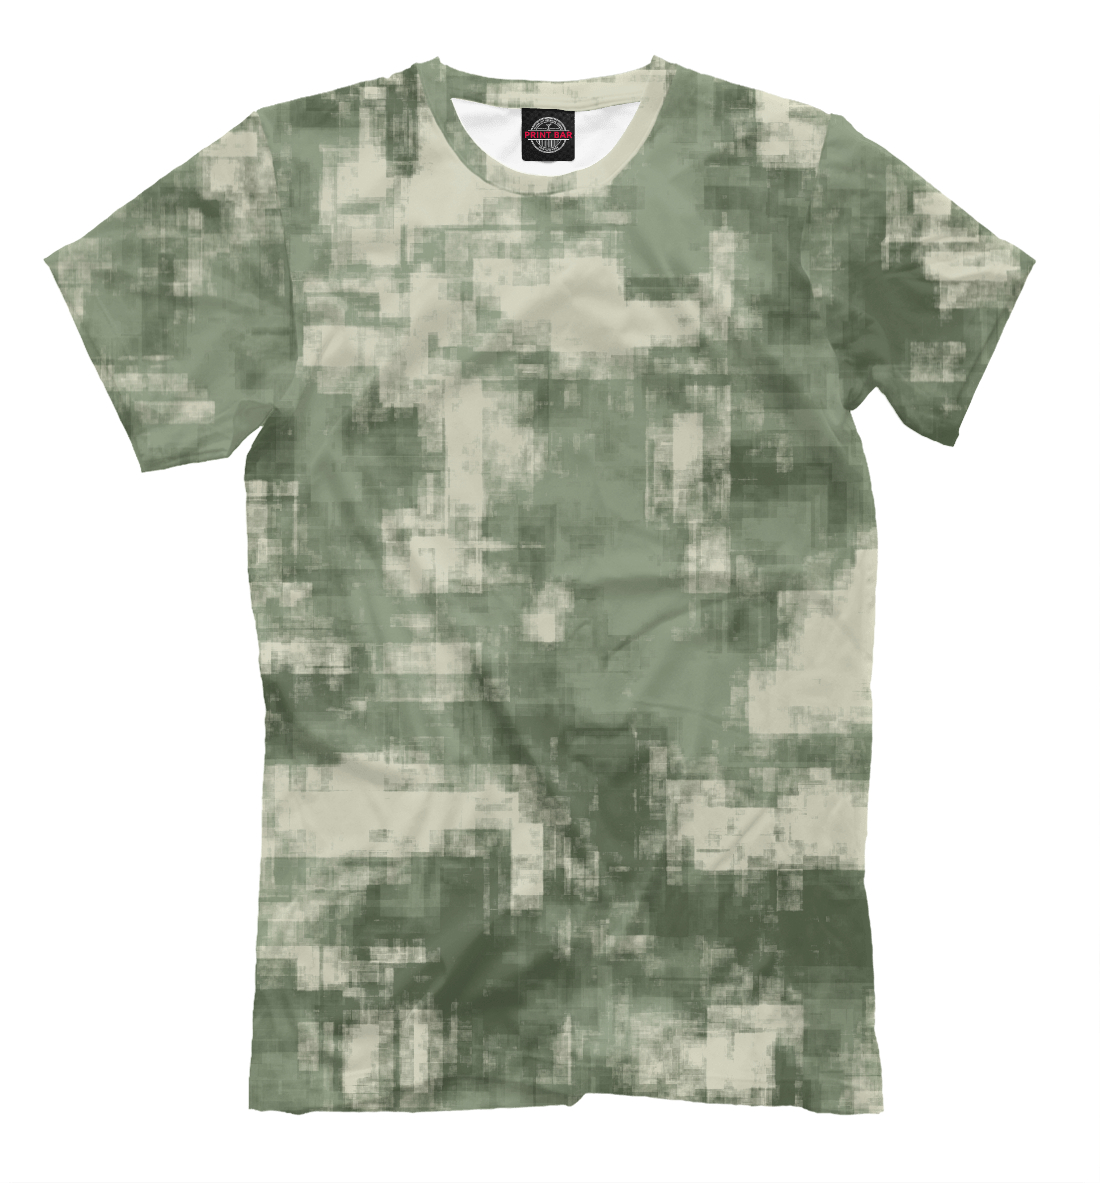 Мужская Футболка Военный камуфляж- одежда для мужчин и женщин, артикул CMF-442561-fut-2mp